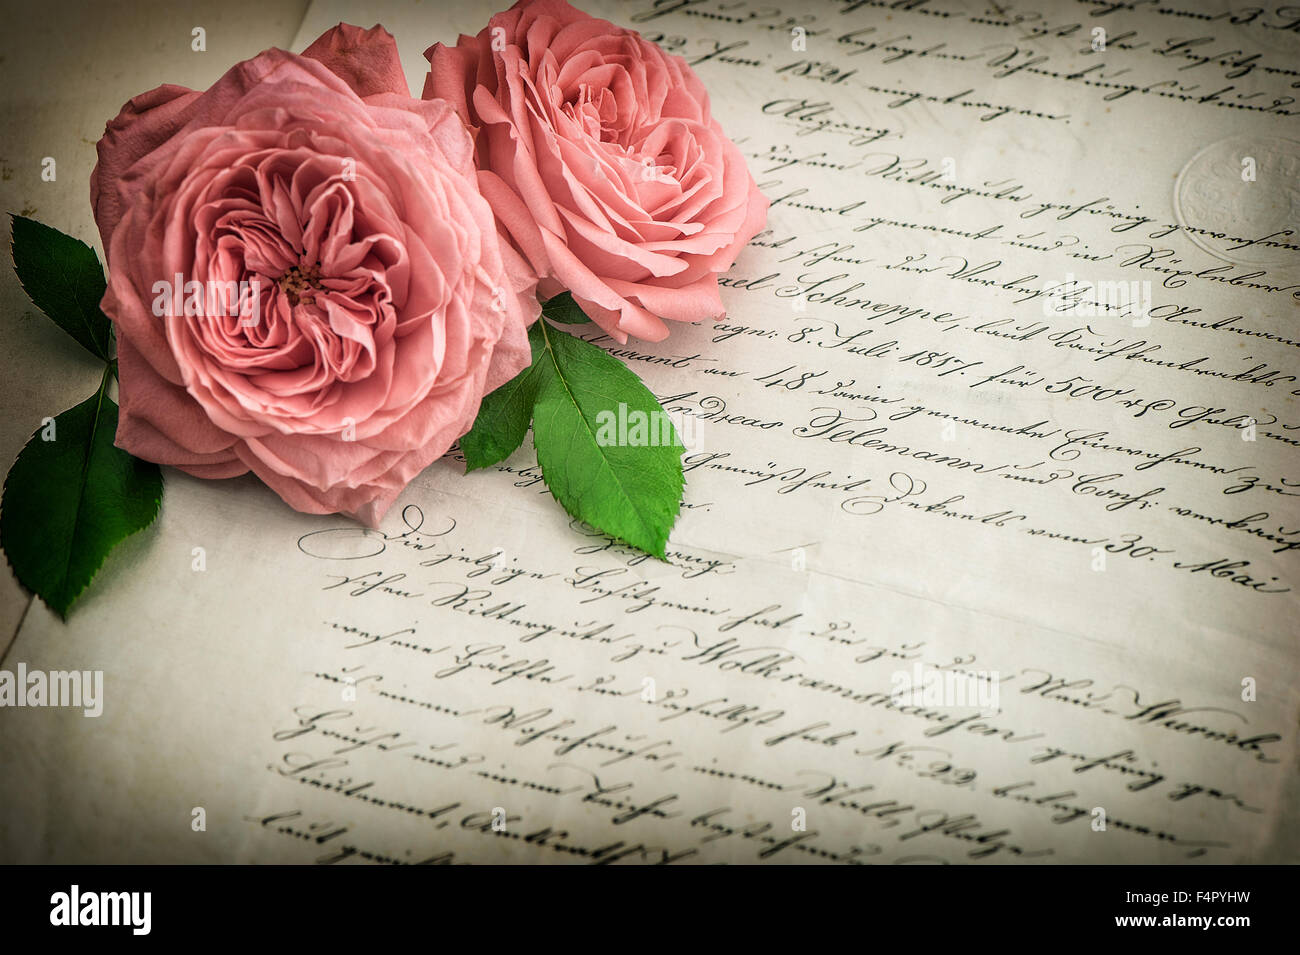 Rose rose fleurs et vieille lettre manuscrite. Vintage paper background. Retro style tonique photo avec vignette. Selective focus Banque D'Images